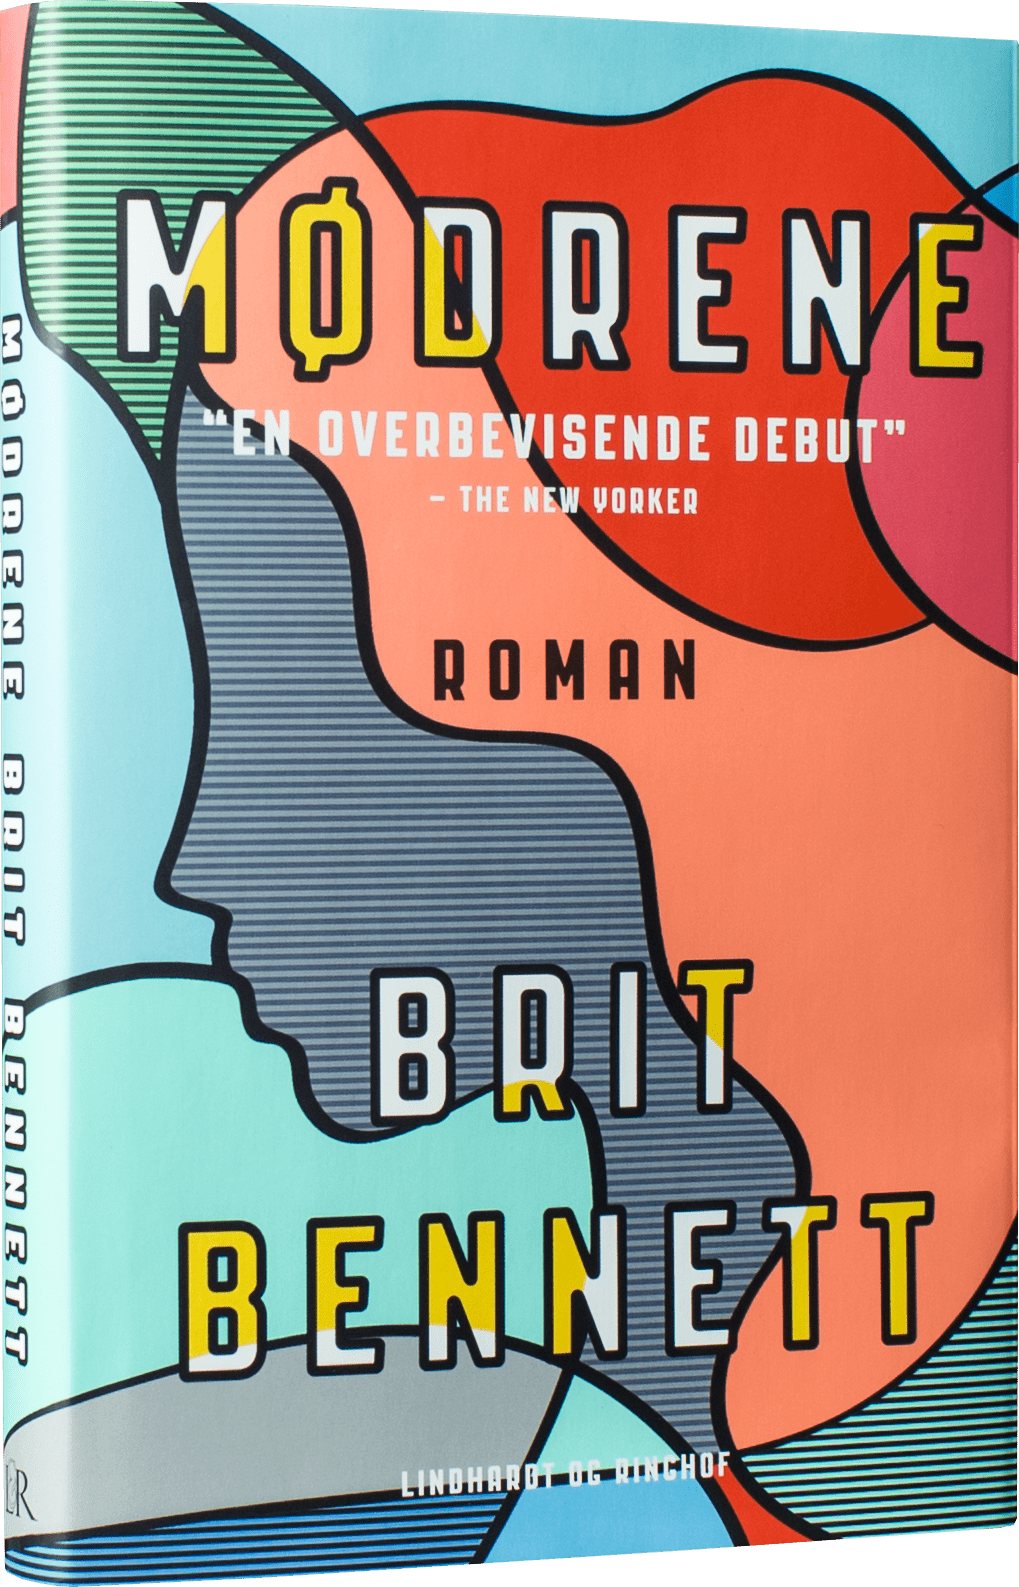 Mødrene, Brit Bennett, dannelsesroman